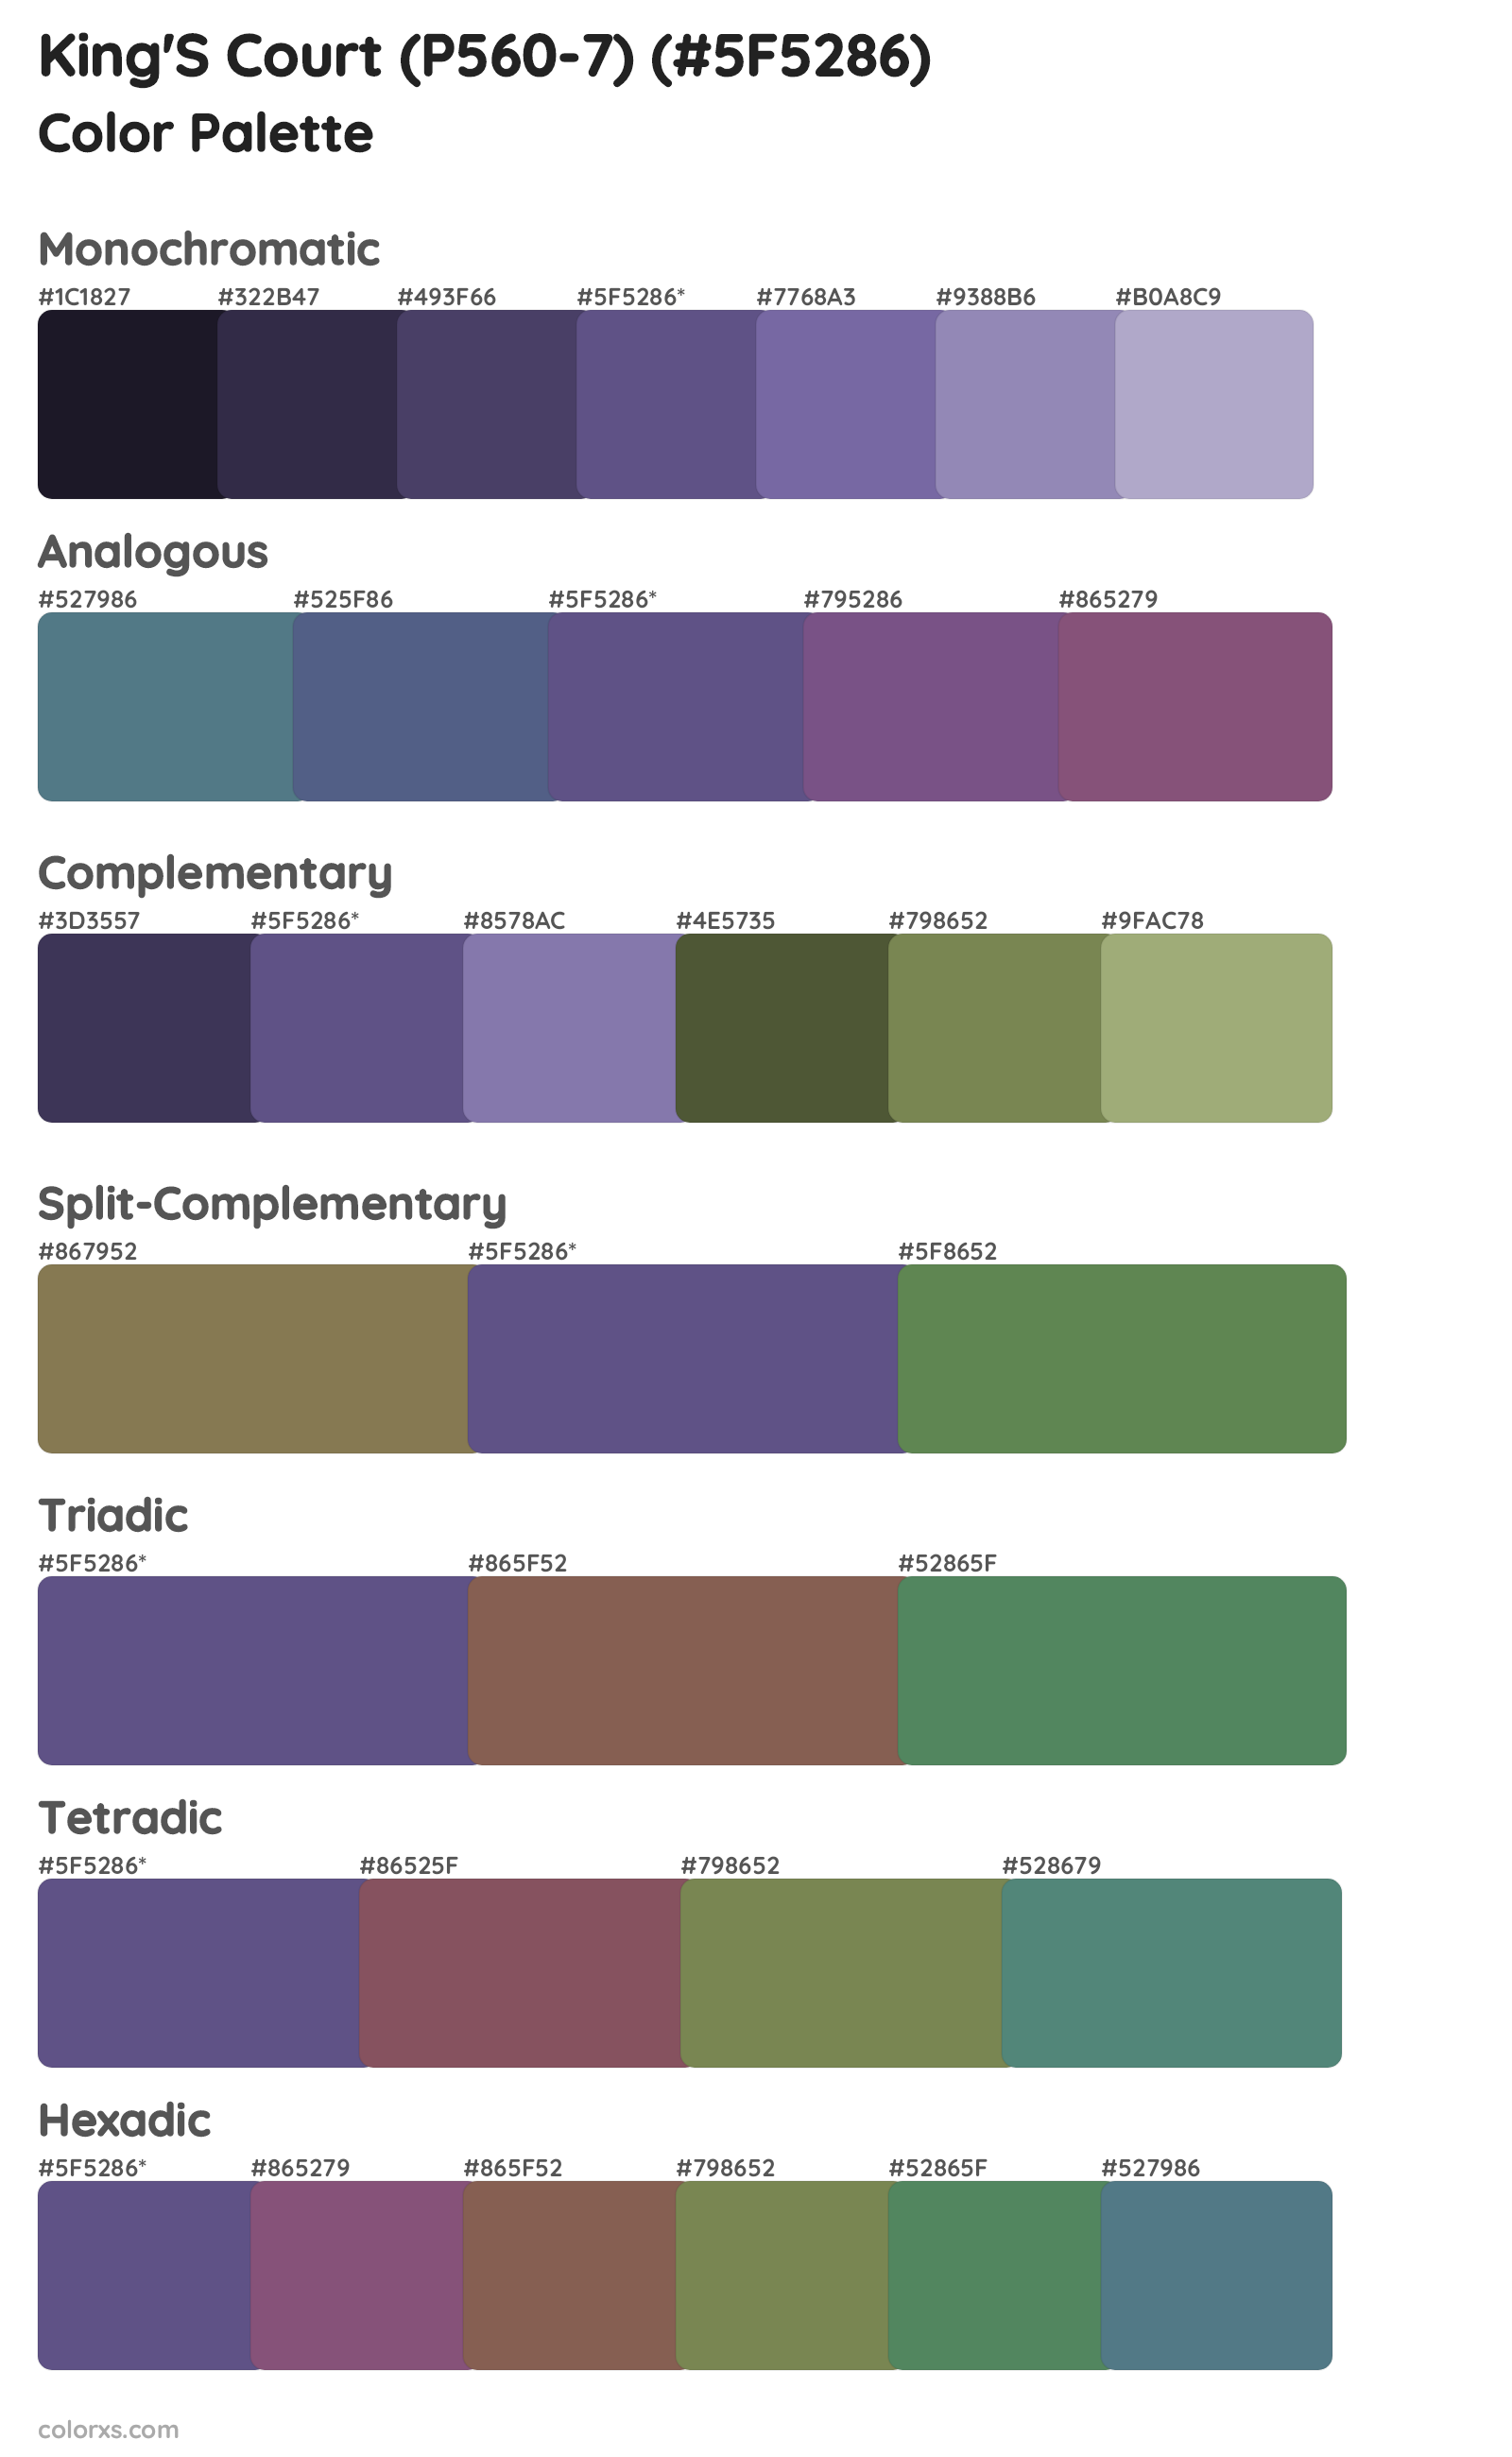 King'S Court (P560-7) Color Scheme Palettes